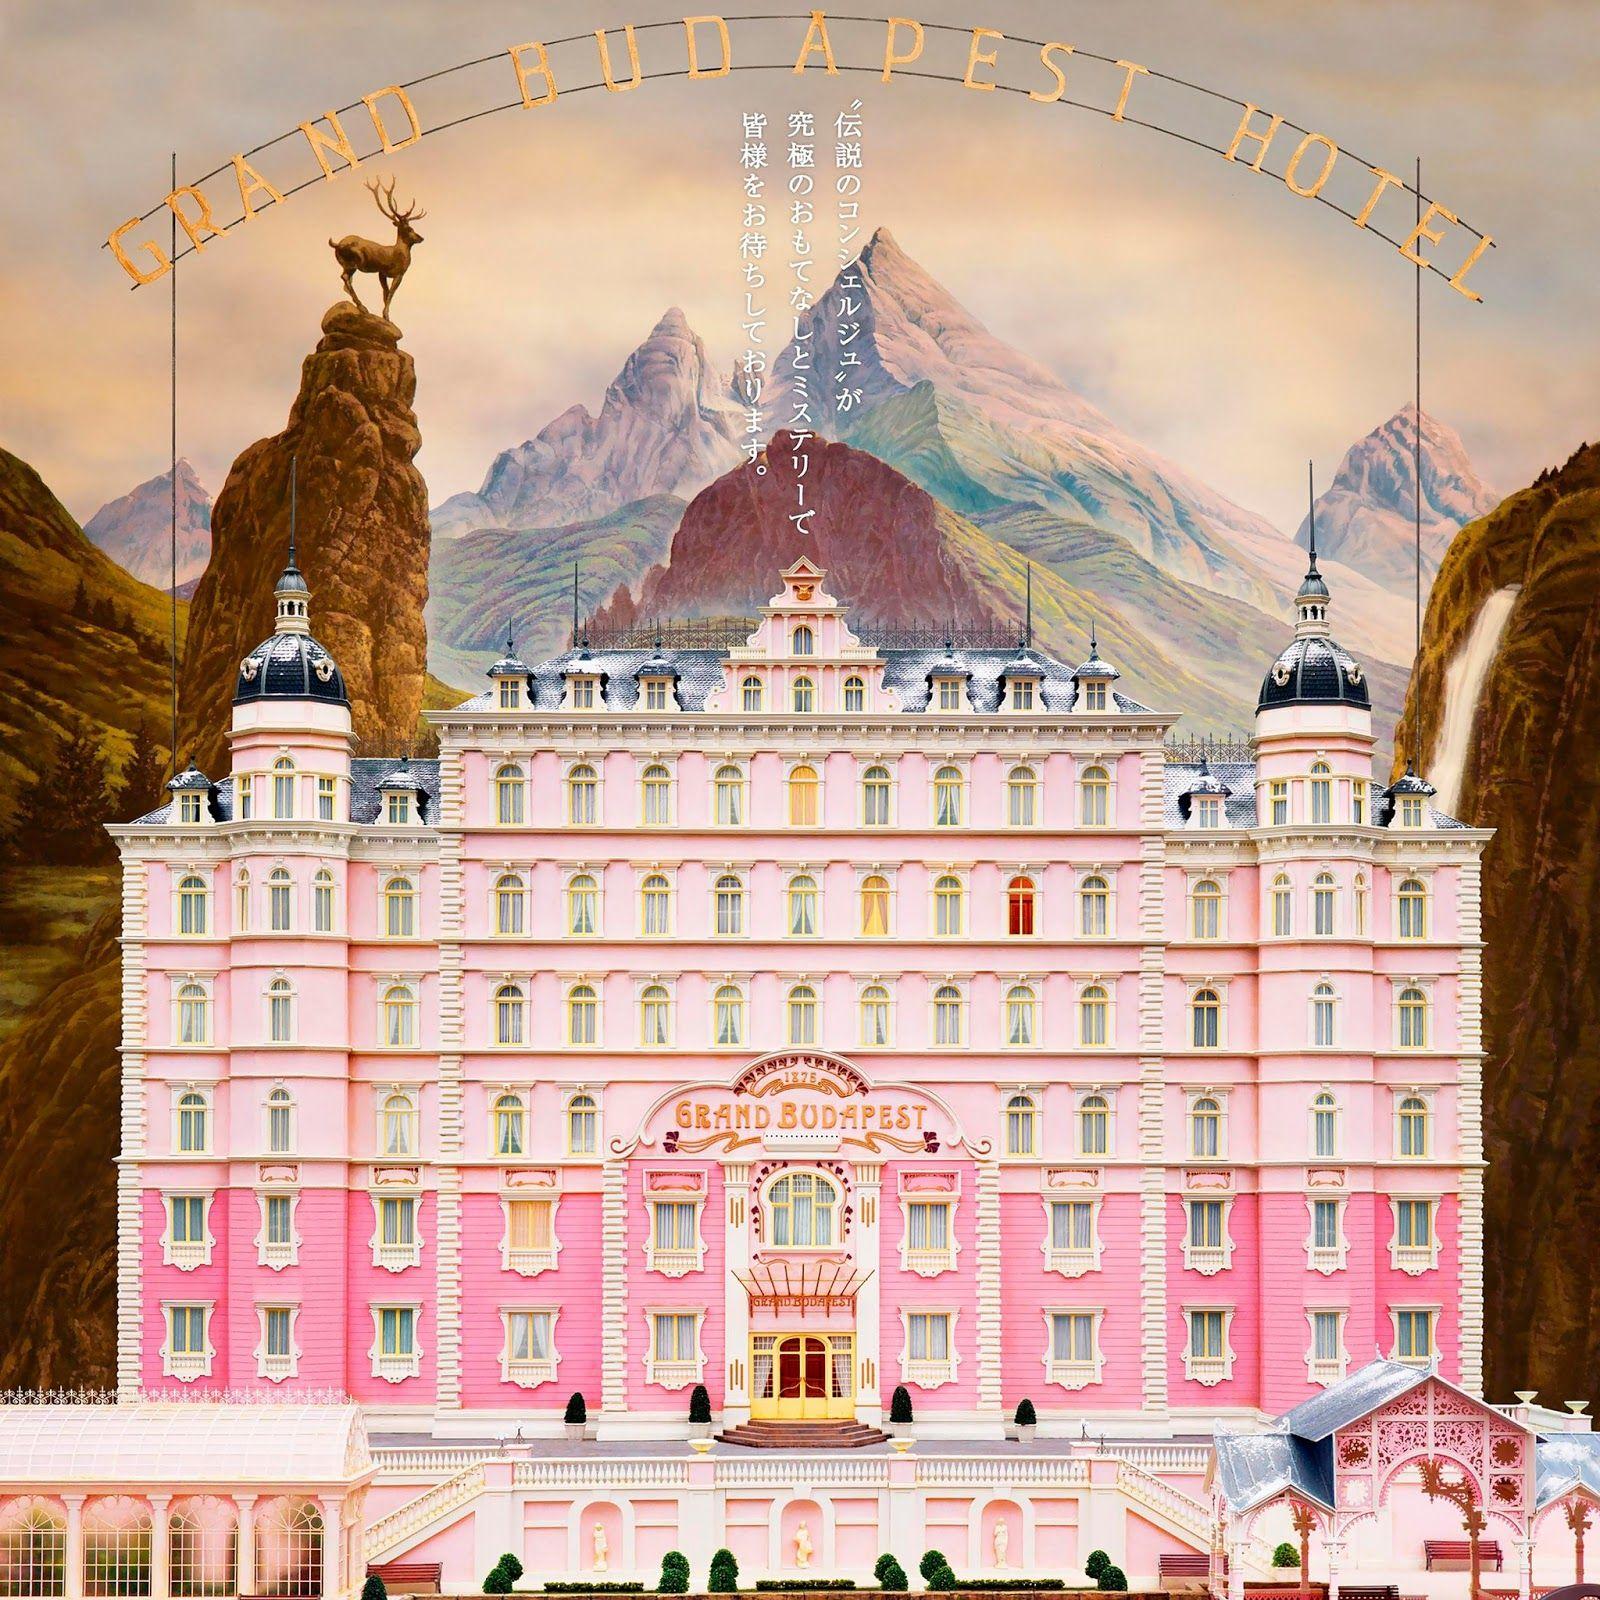 The Grand Budapest Hotel iPad Wallpaper. Free iPad Retina HD Wallpaper